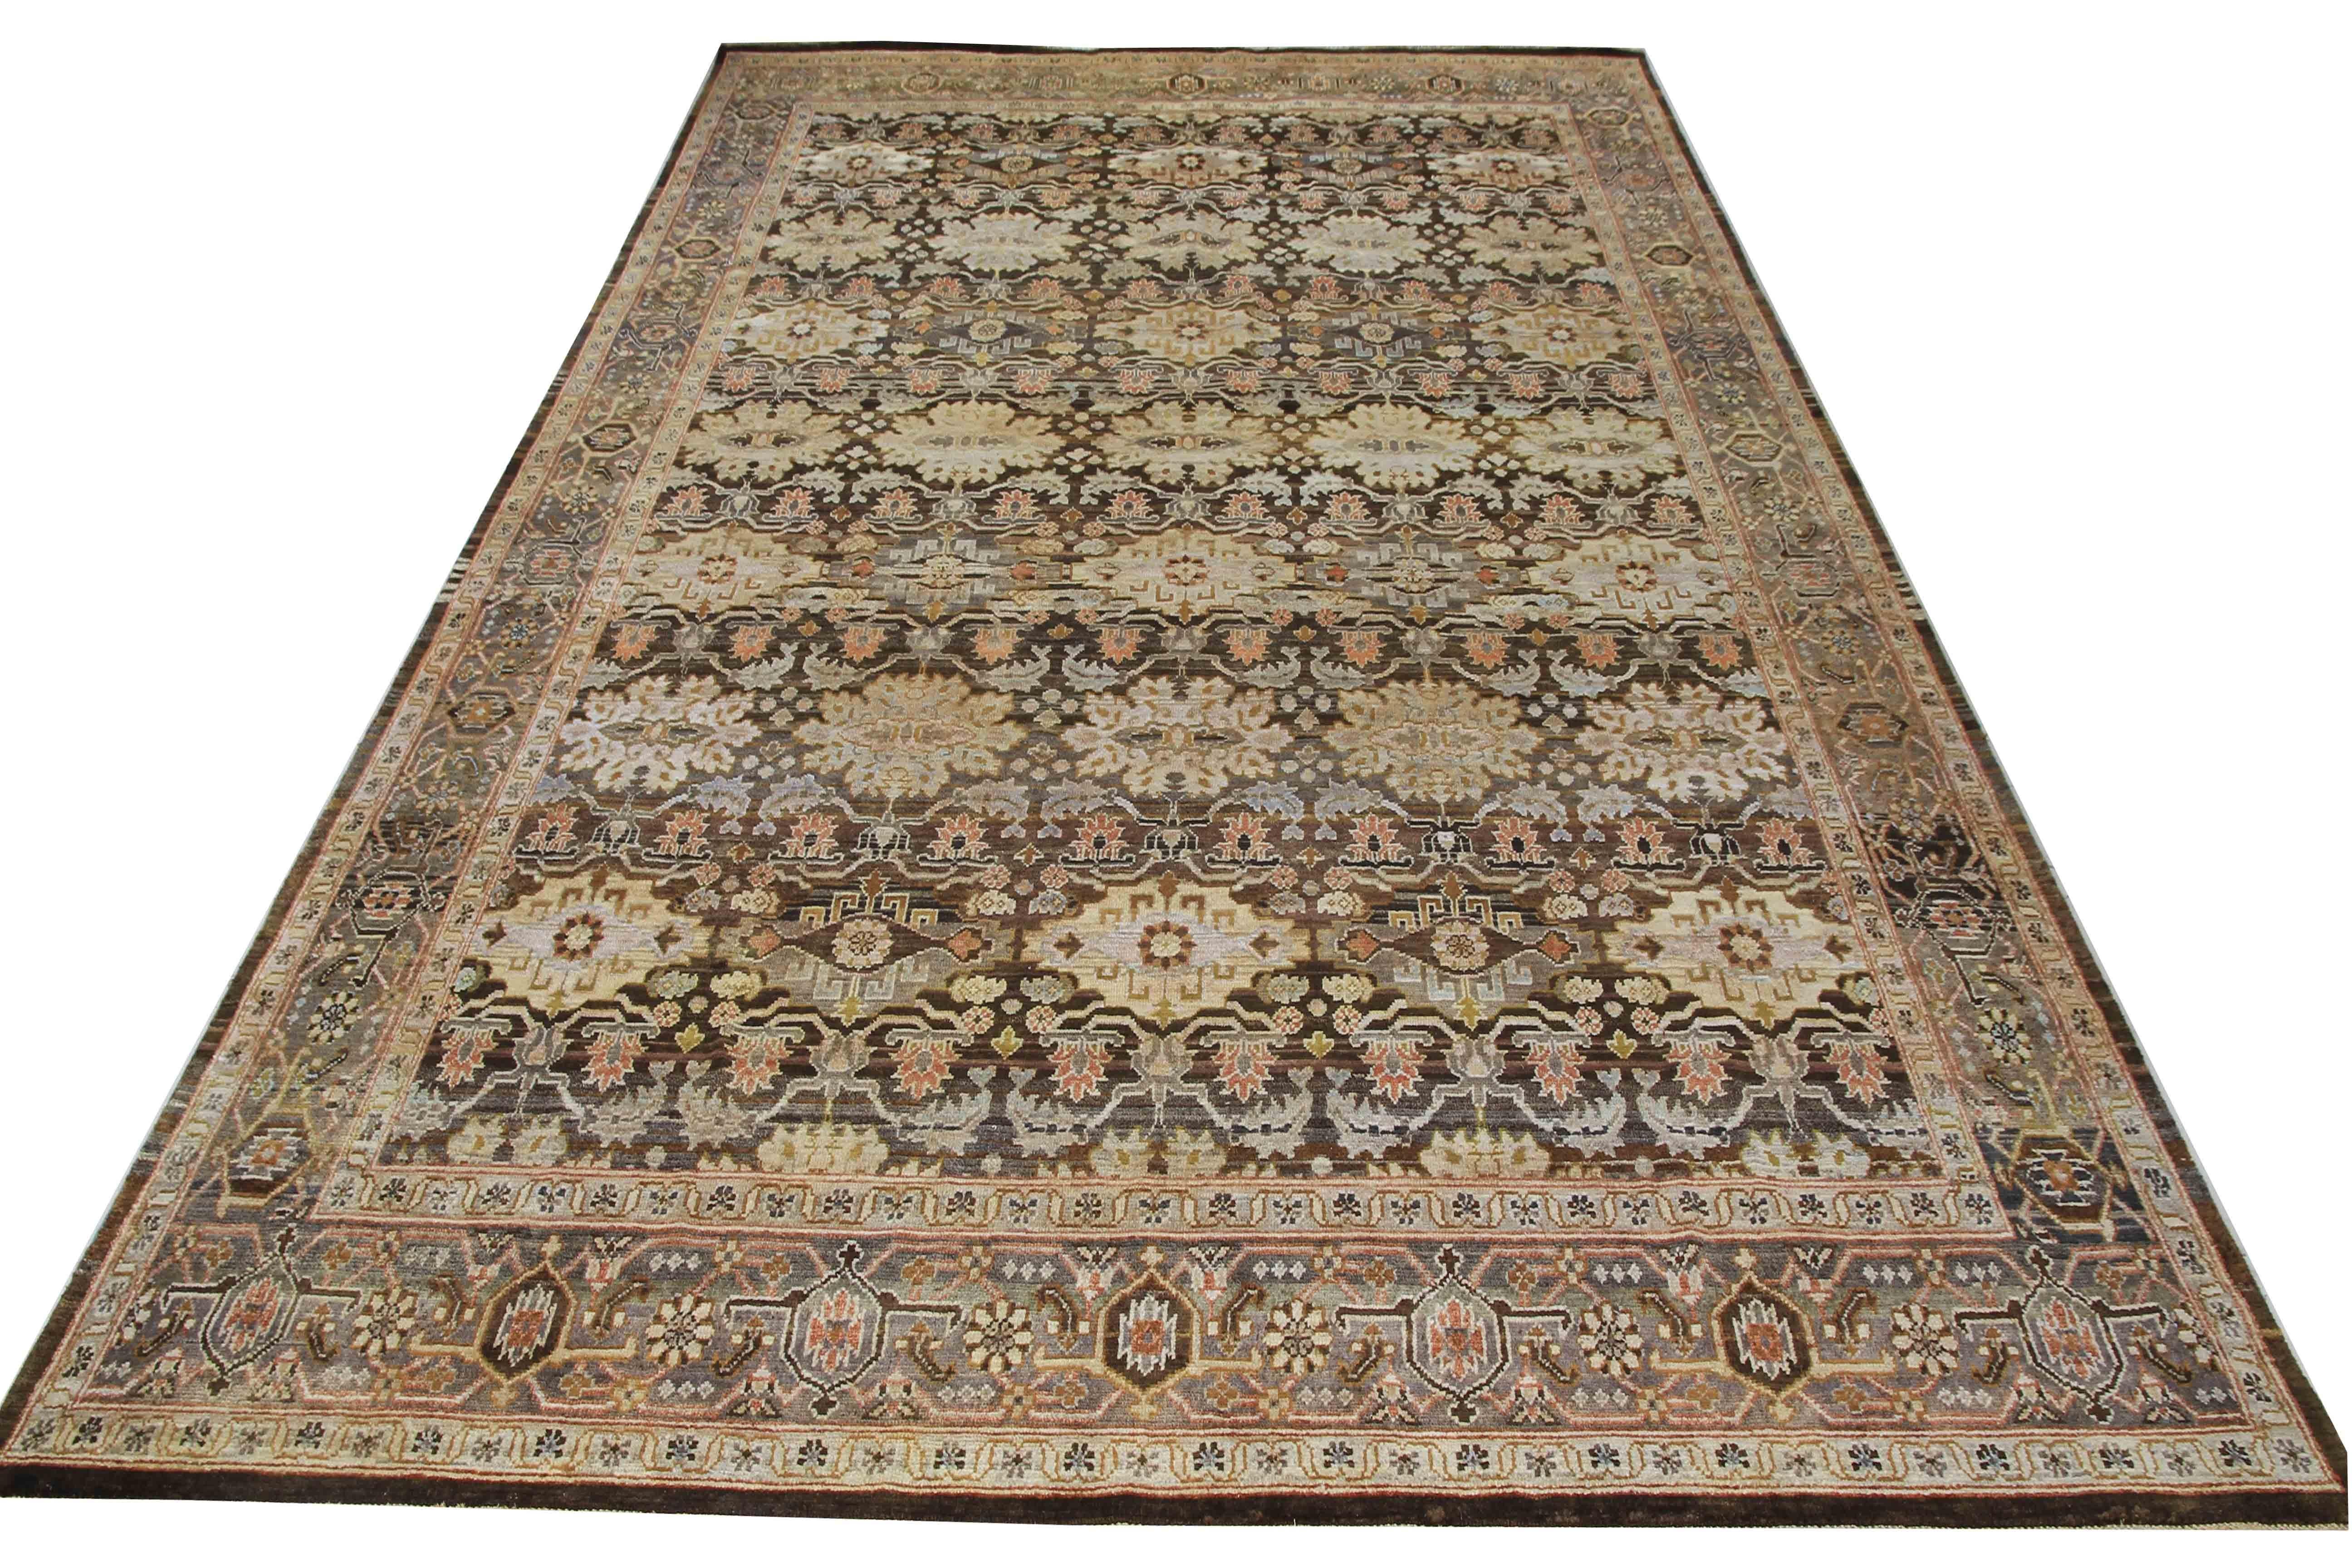 Dieser in Jaipur, Indien, handgeknüpfte antike Teppich mit pflanzlicher Färbung ist ein Meisterwerk der Webkunst. Mit den Maßen 8'8'' x 12'9'' bietet dieser Teppich ein ausgeklügeltes Geflecht aus verschiedenen Motiven in Schwarz- und